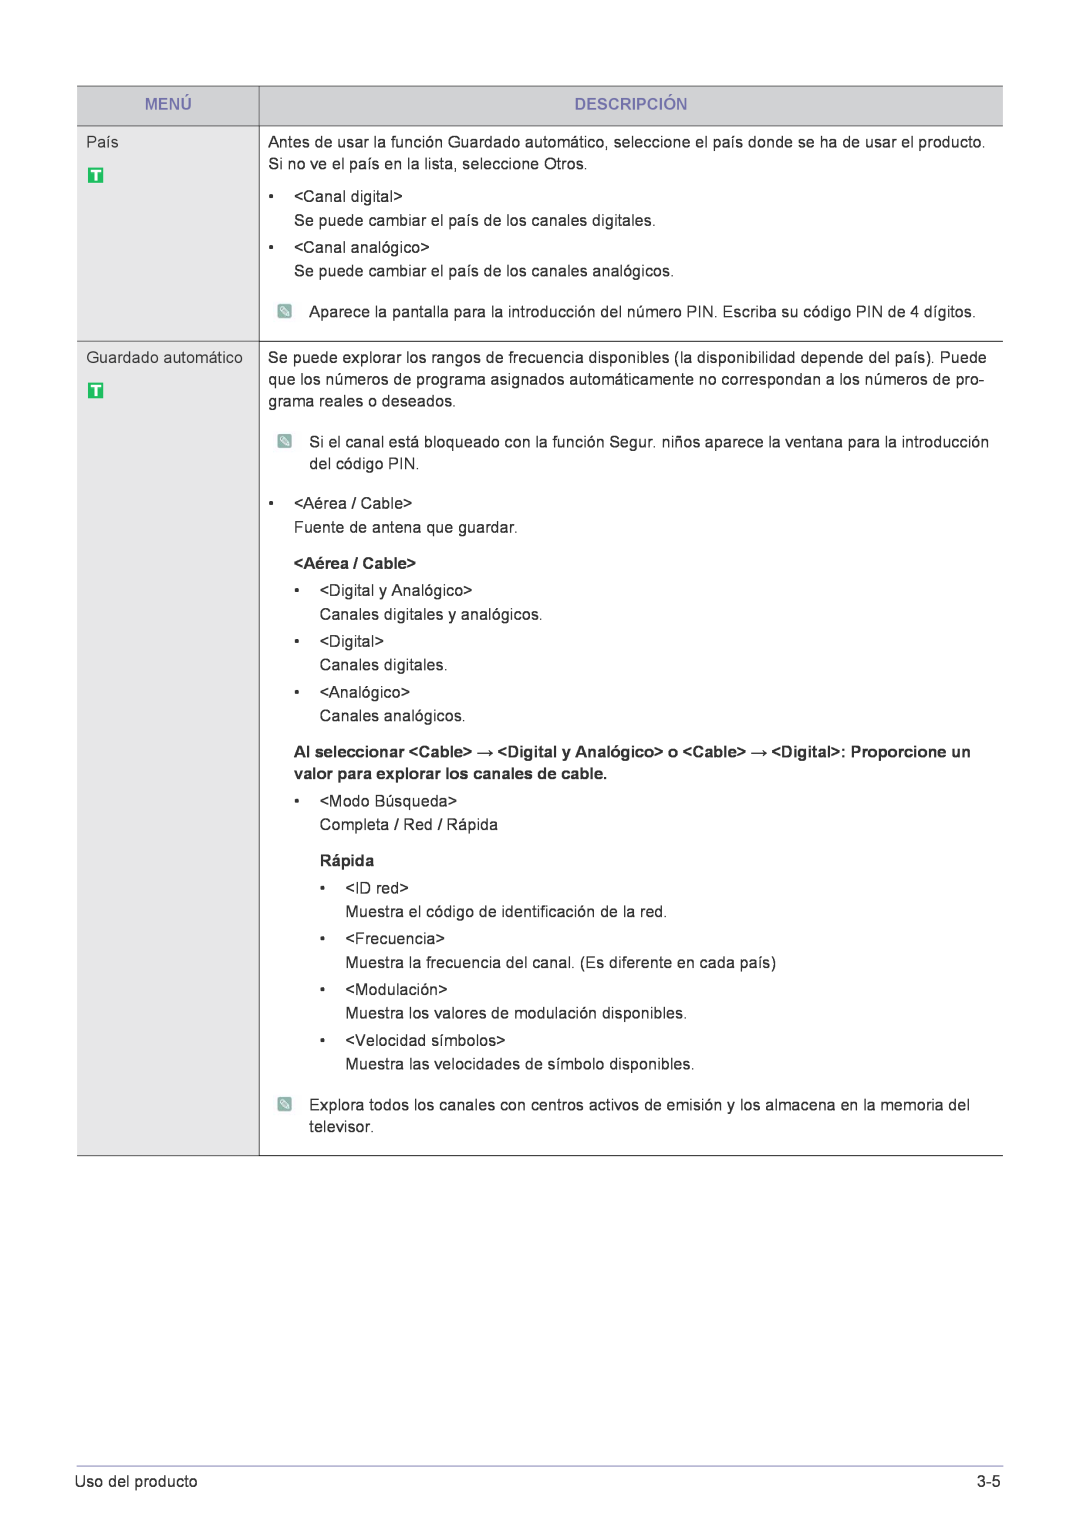 Samsung LS22FMDGF/EN manual Aérea / Cable, Rápida, Menú, Descripción, Analógico Canales analógicos 